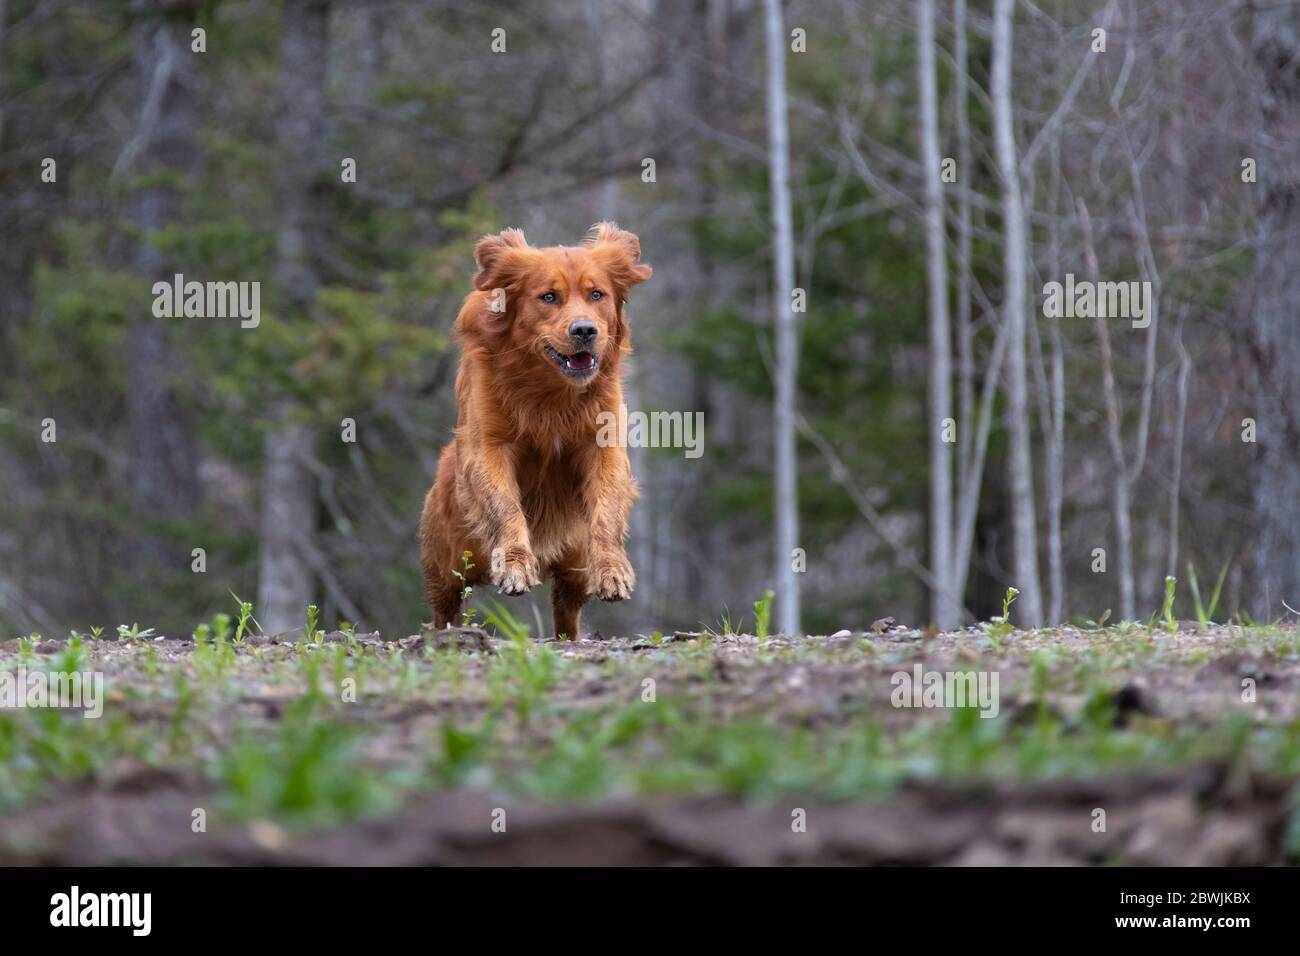 Golden retriever dog running on a hill. Stock Photo